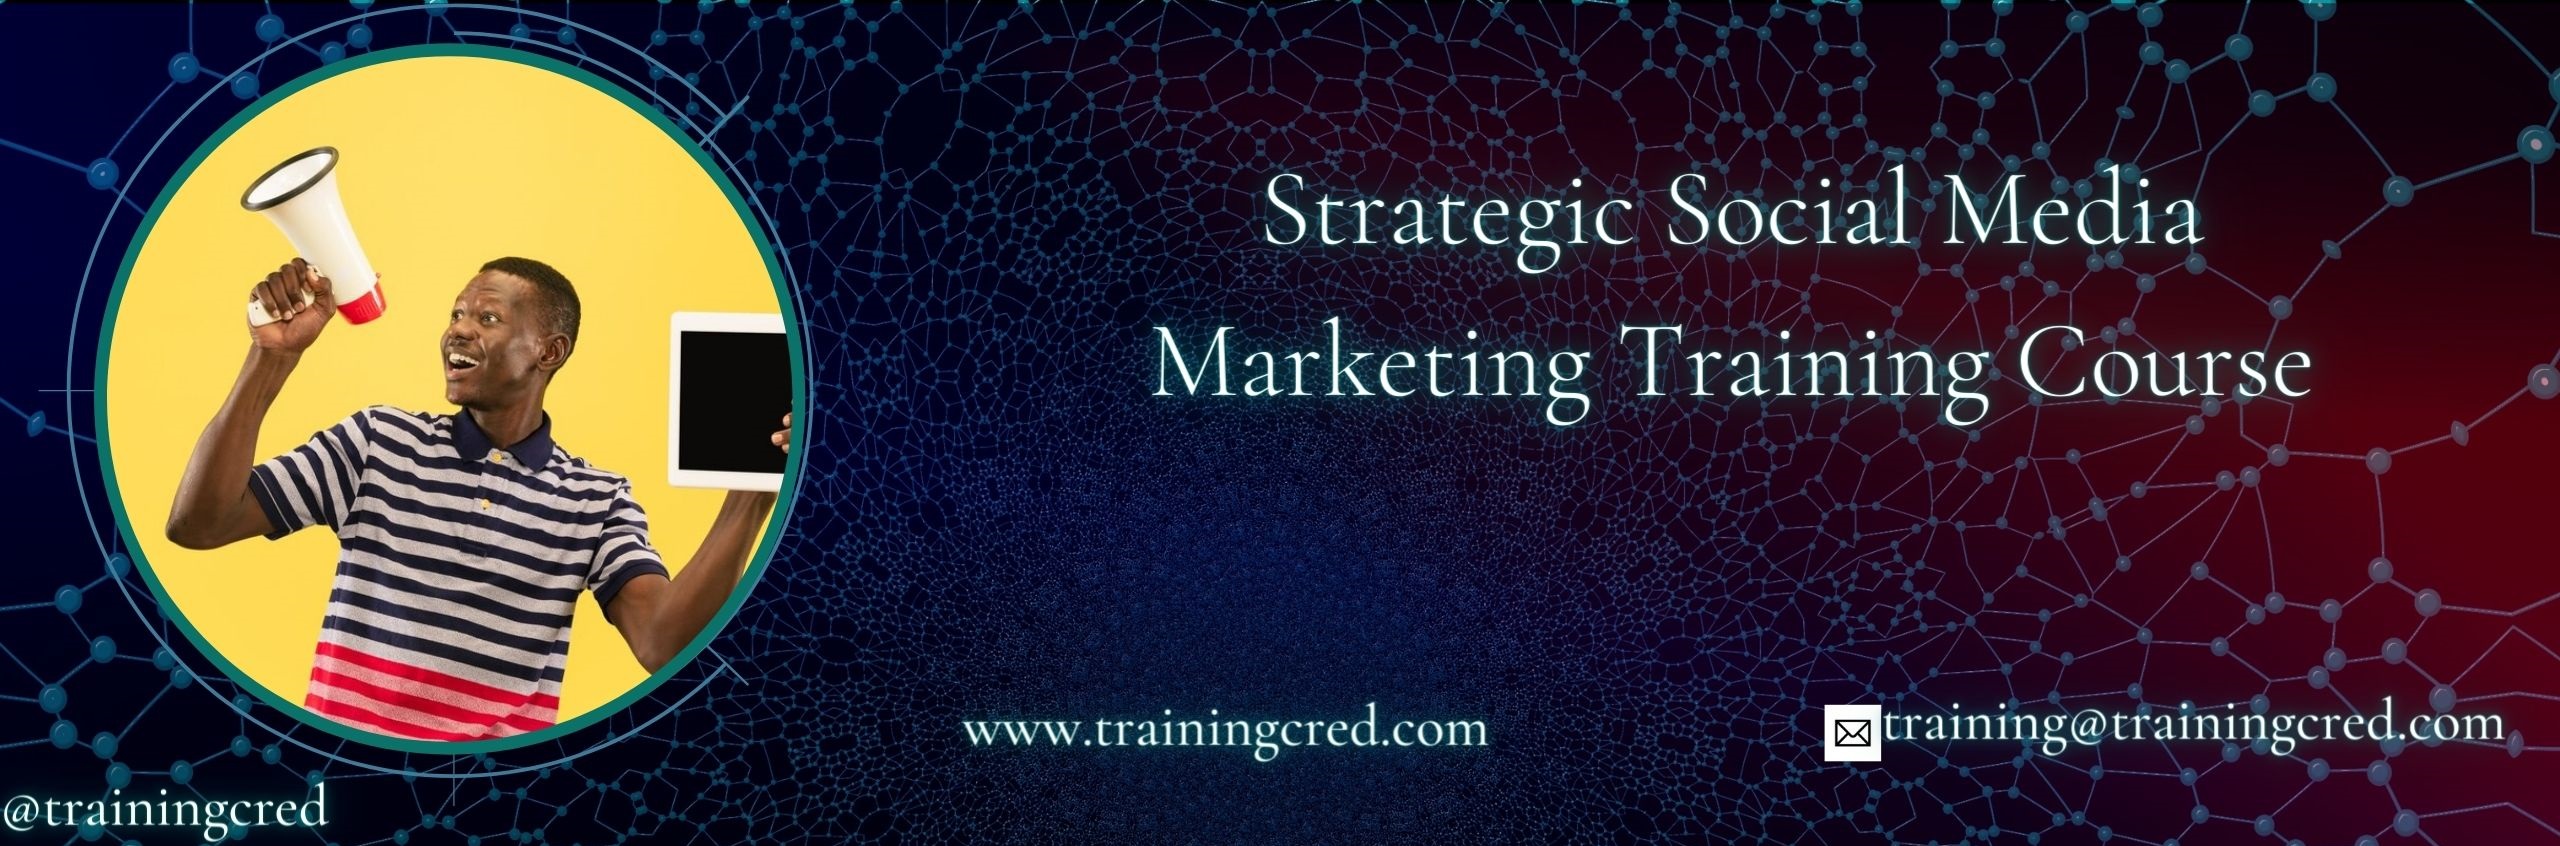 Strategic Social Media Marketing Training